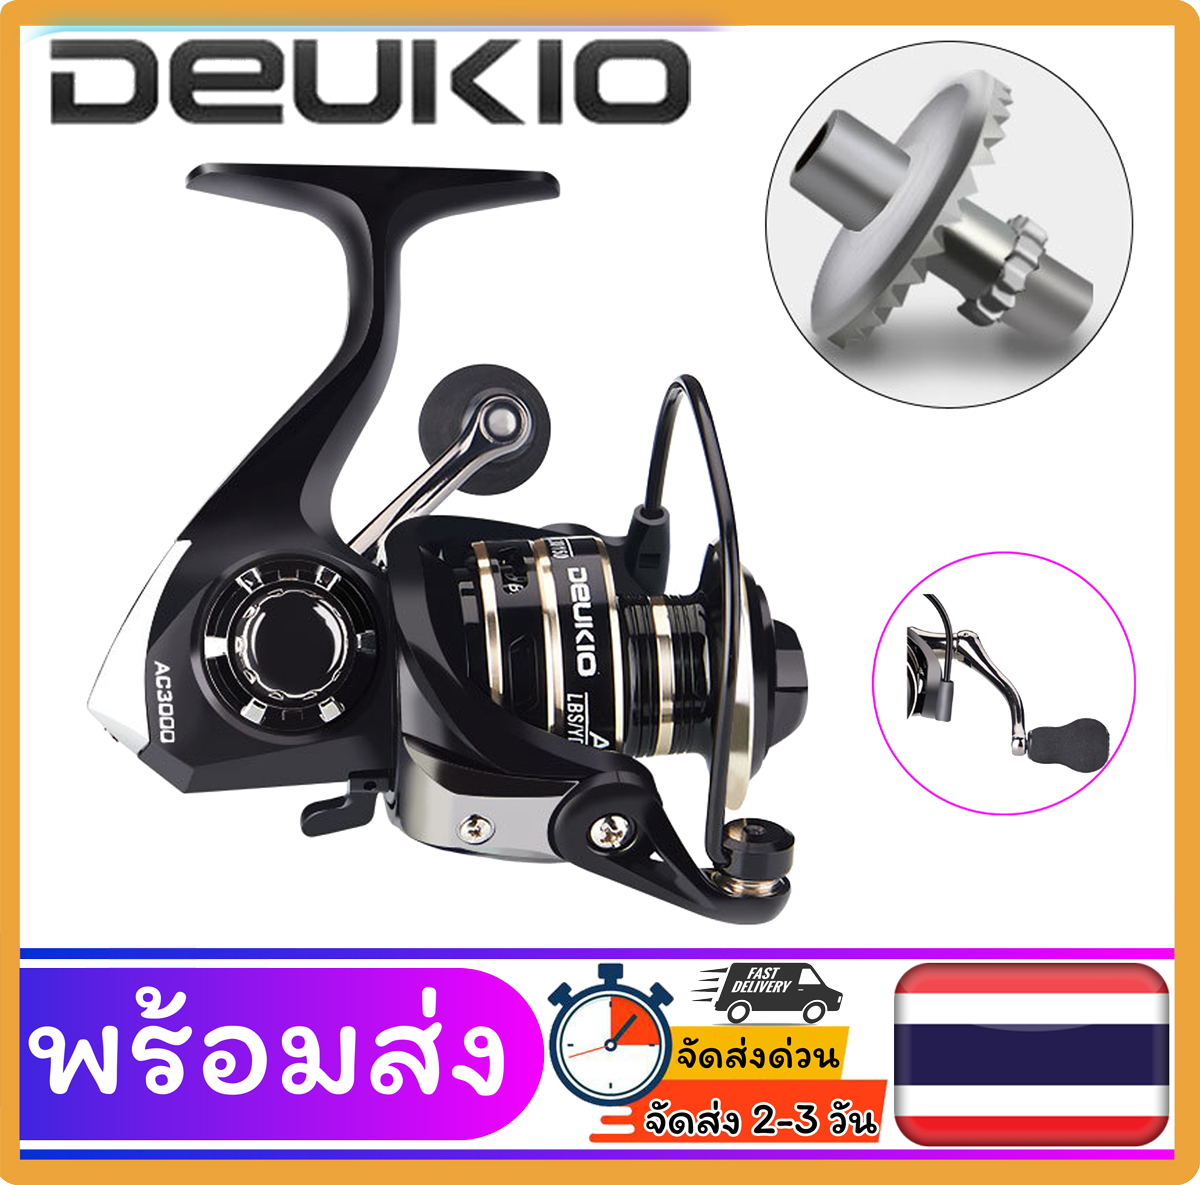 รอกสปินนิ่ง รอกตกปลา อุปกรณ์ตกปลา รอกรุ่น DEUKIO AC มีให้เลือกเบอร์ AC2000 - AC7000 หมุนลื่น รอกโลหะ พร้อมส่งจากไทย